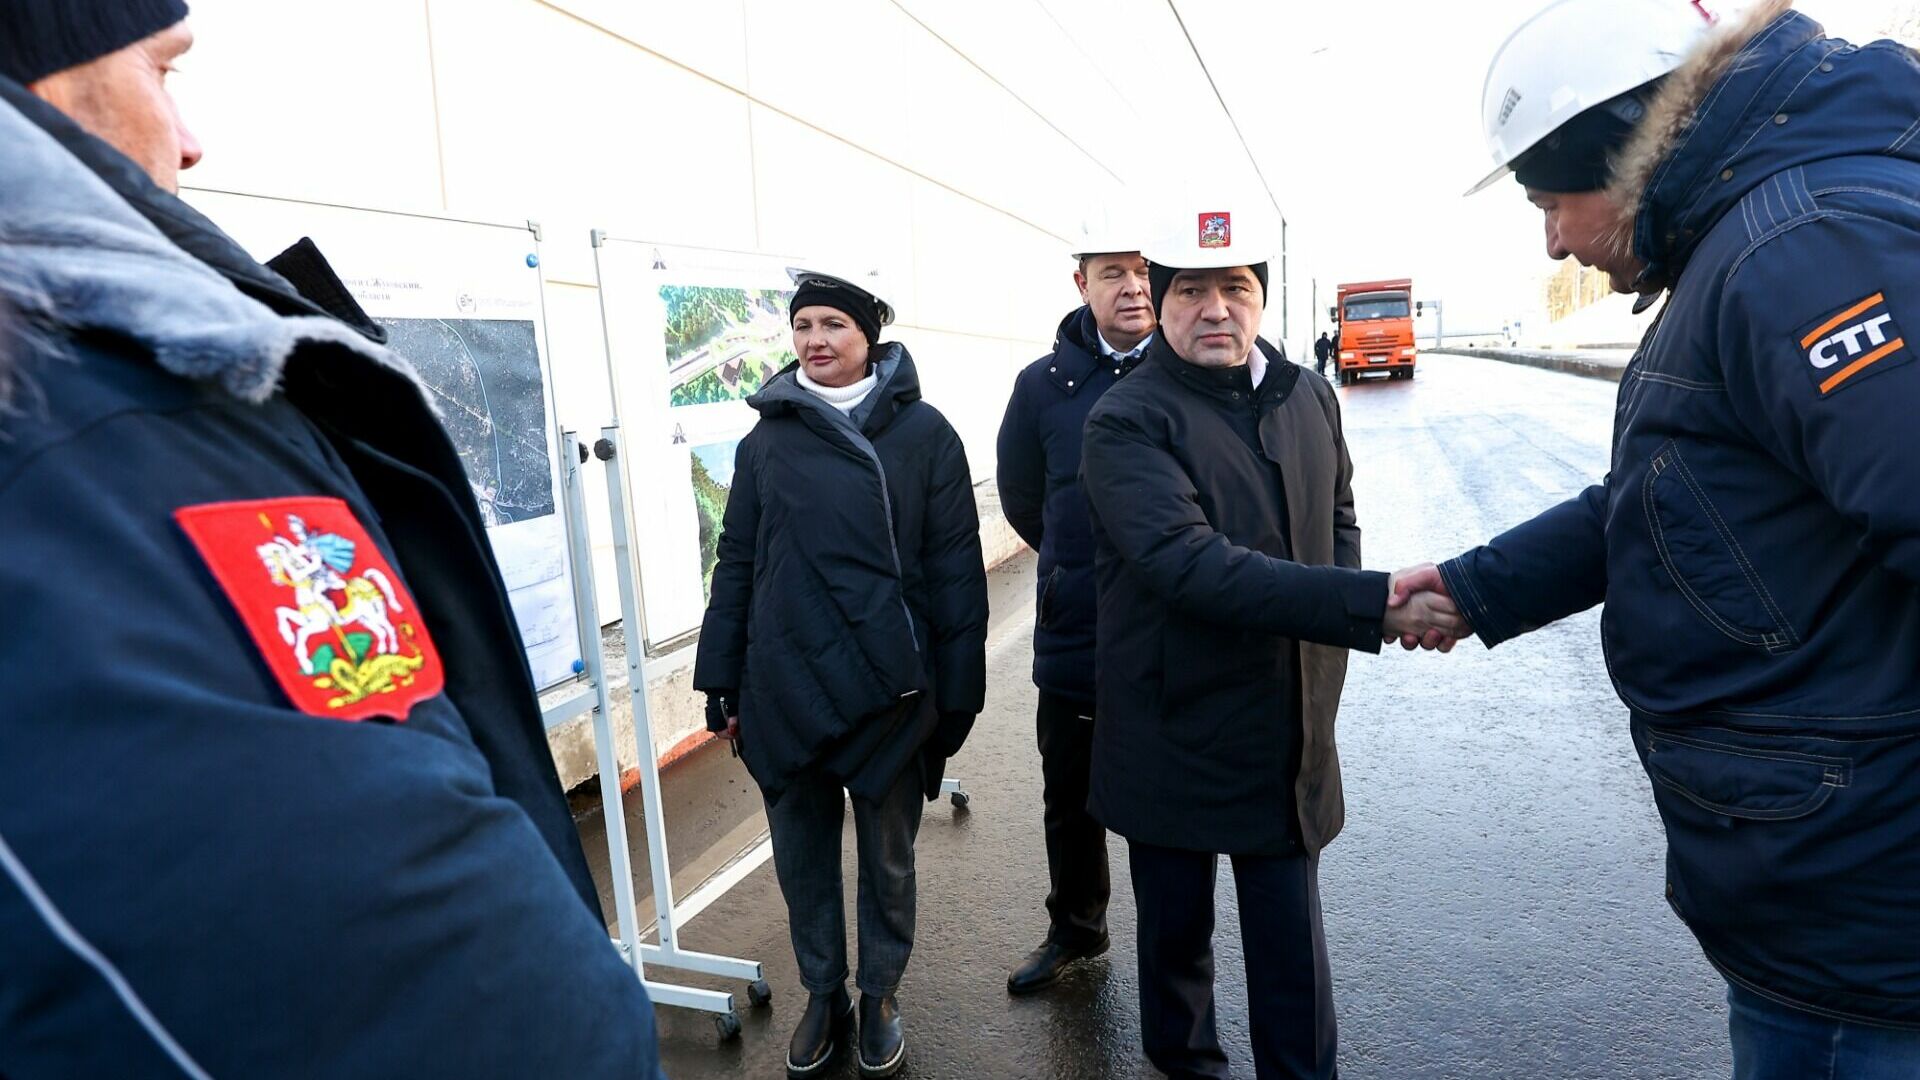 Воробьев: В конце декабря закончим реконструкцию дороги в подмосковном Жуковском